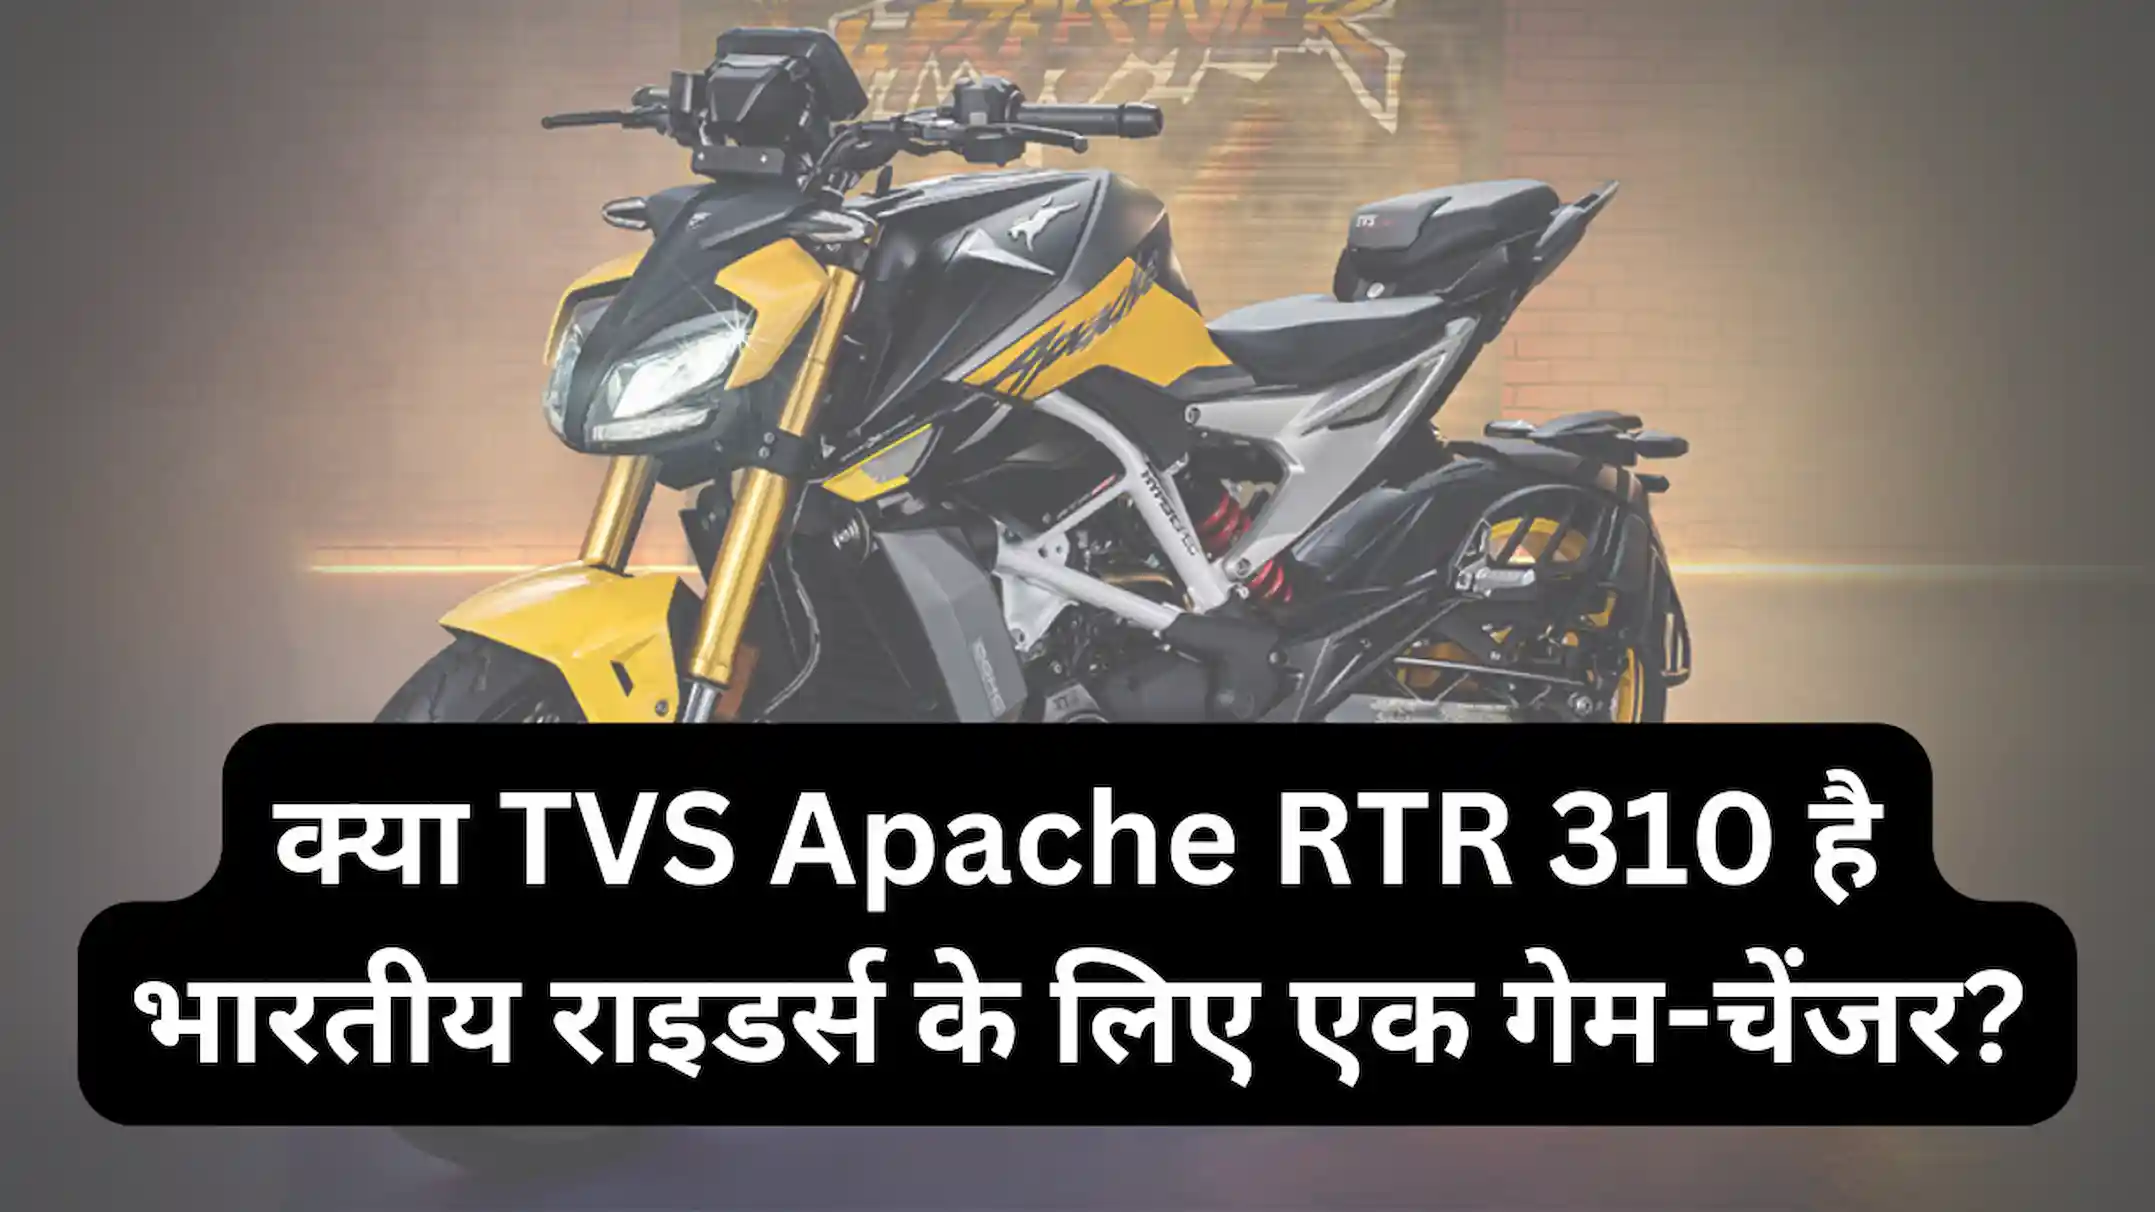 क्या TVS Apache RTR 310 है भारतीय राइडर्स के लिए एक गेम-चेंजर